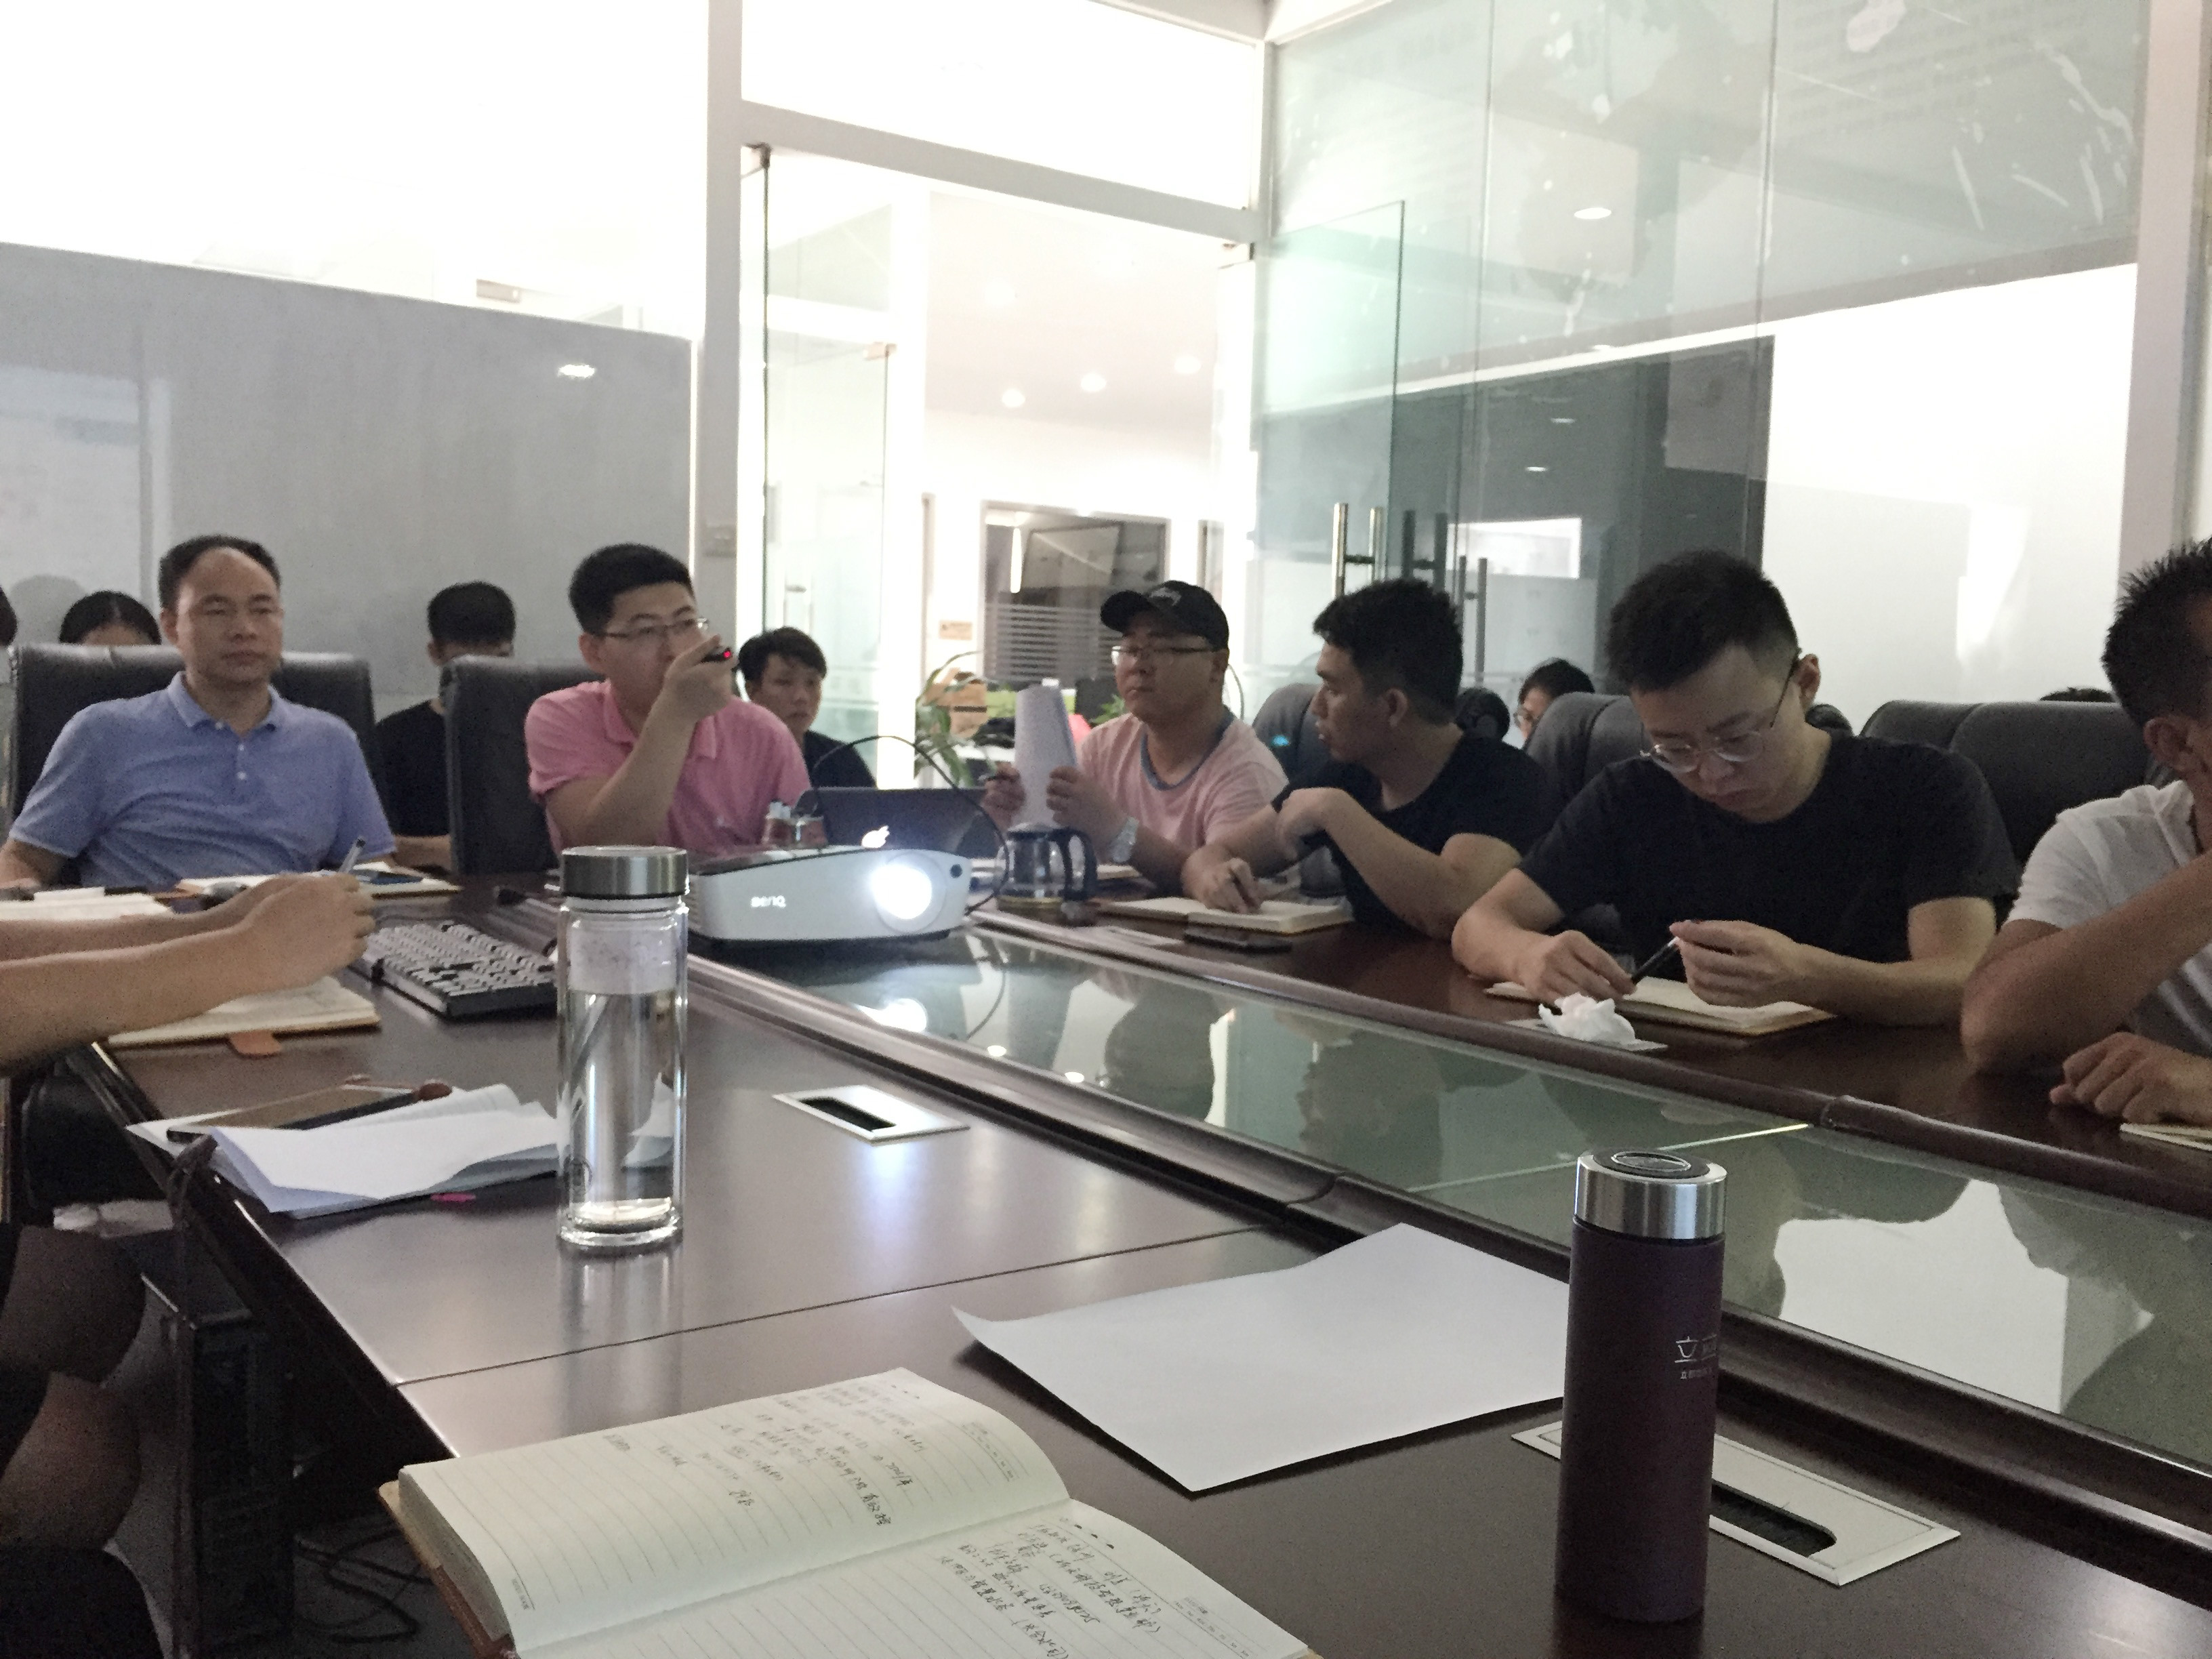 青藤环境特意邀请了高新科技人才专家来到广州总部给全体员工共同学习智慧水务管控一体化平台的专业知识。